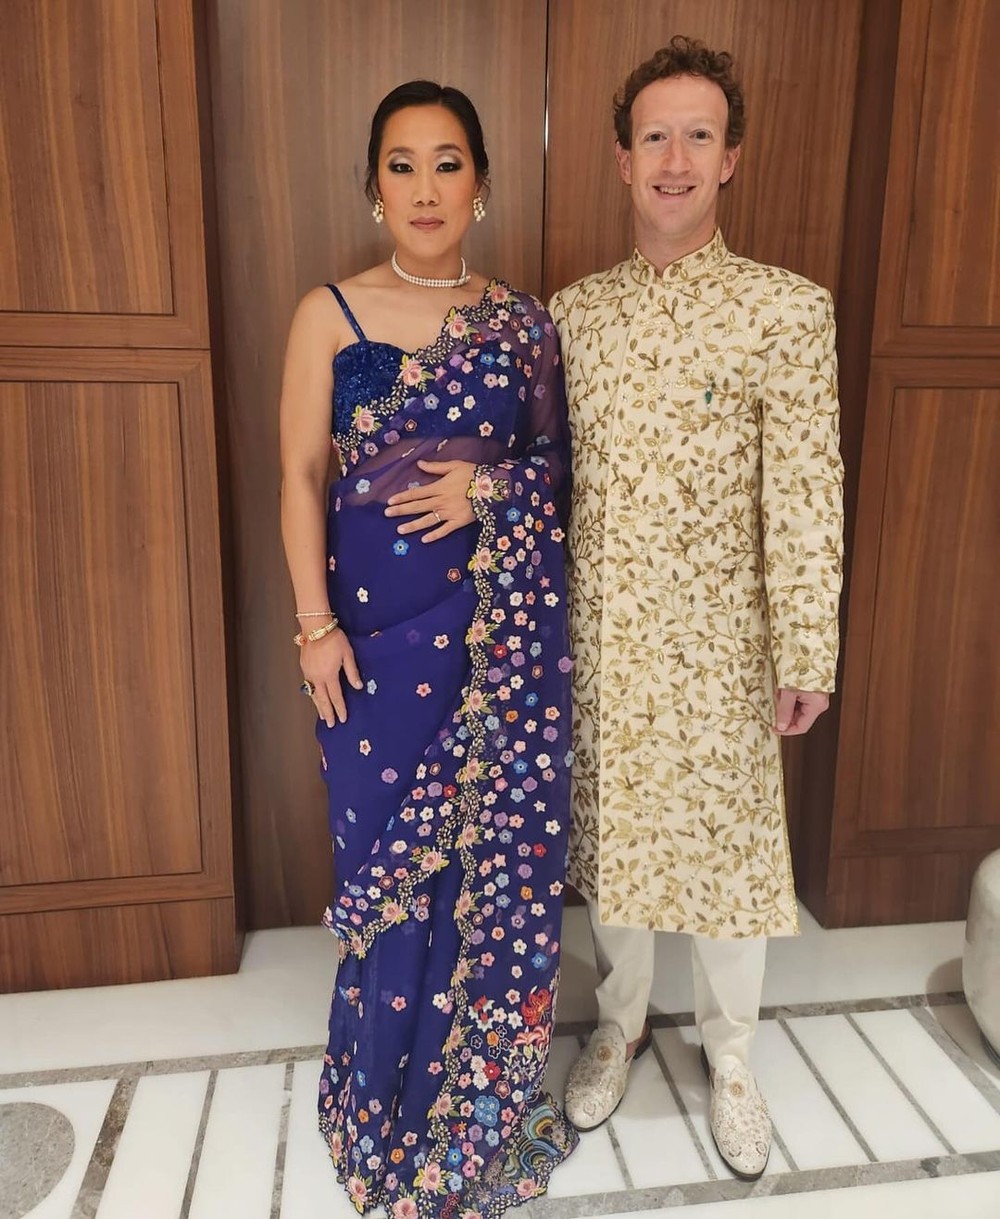 Bà xã Priscilla Chan diện áo sari truyền thống của phụ nữ Ấn Độ, ông trùm Zuckerberg mặc bộ đồ màu be, họa tiết hoa lá tạo nên hình ảnh ăn ý khi dự cưới cùng